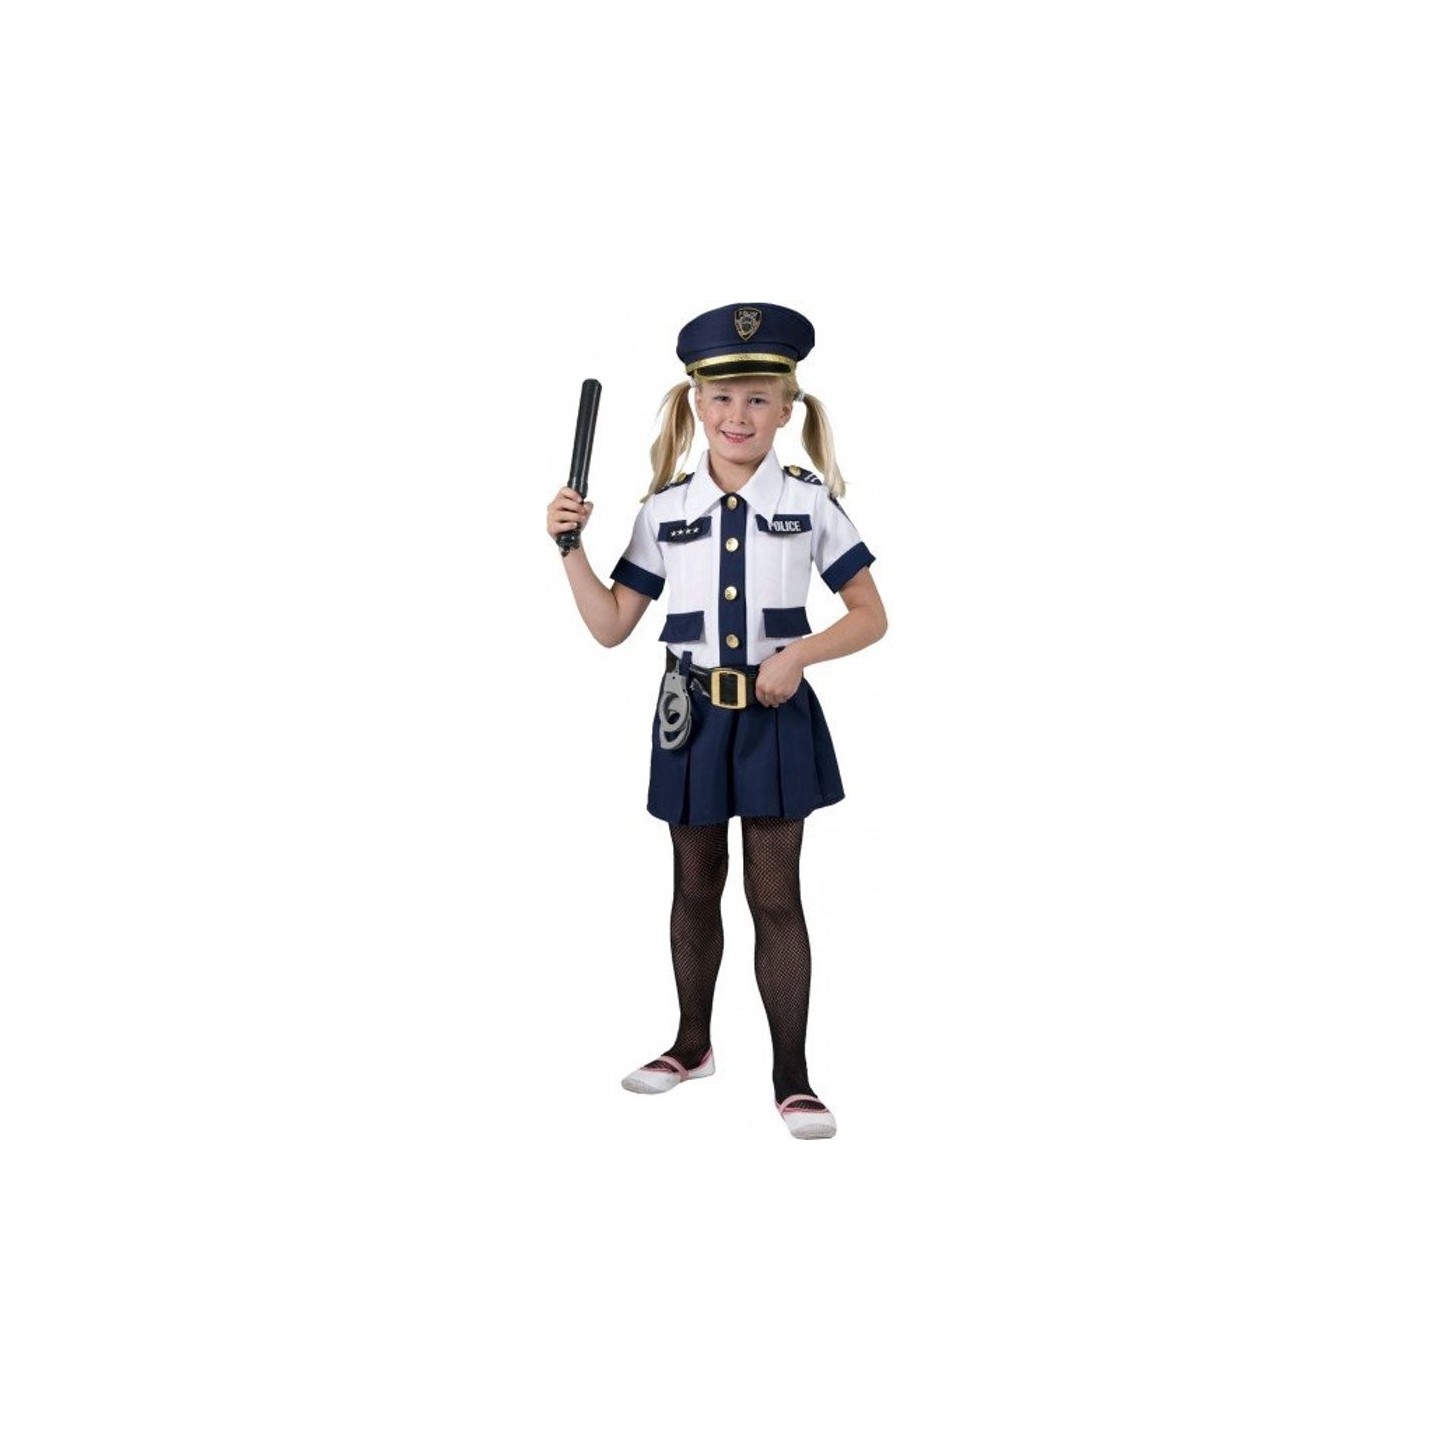 Politiepak kind - meisjes kostuum | Jokershop.be -